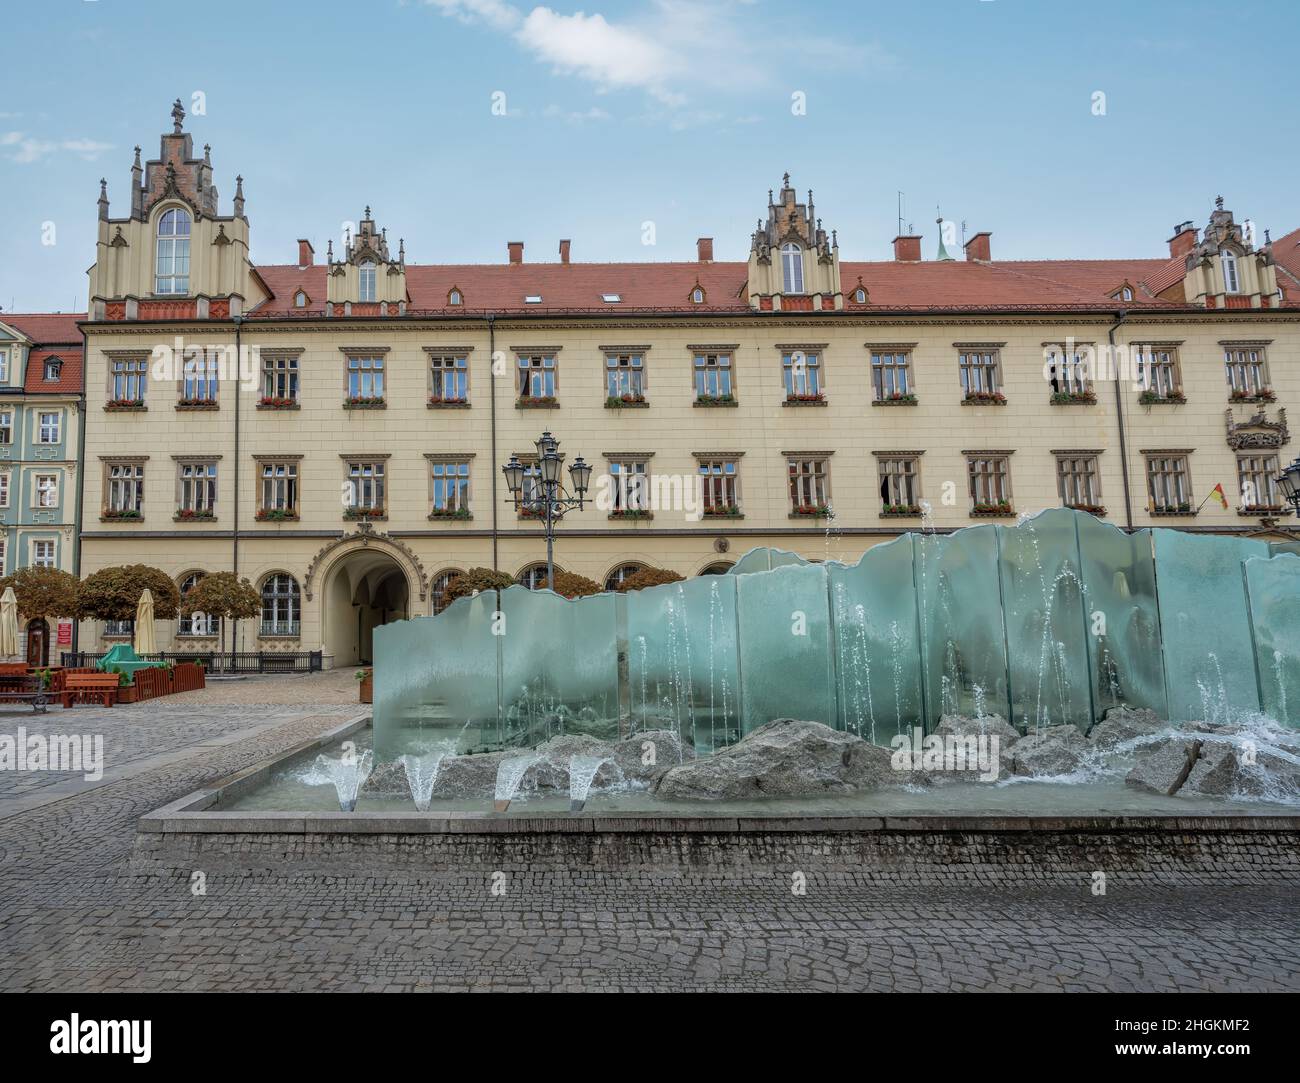 Nouvel hôtel de ville et fontaine Zdroj sur la place du marché - Wroclaw, Pologne Banque D'Images